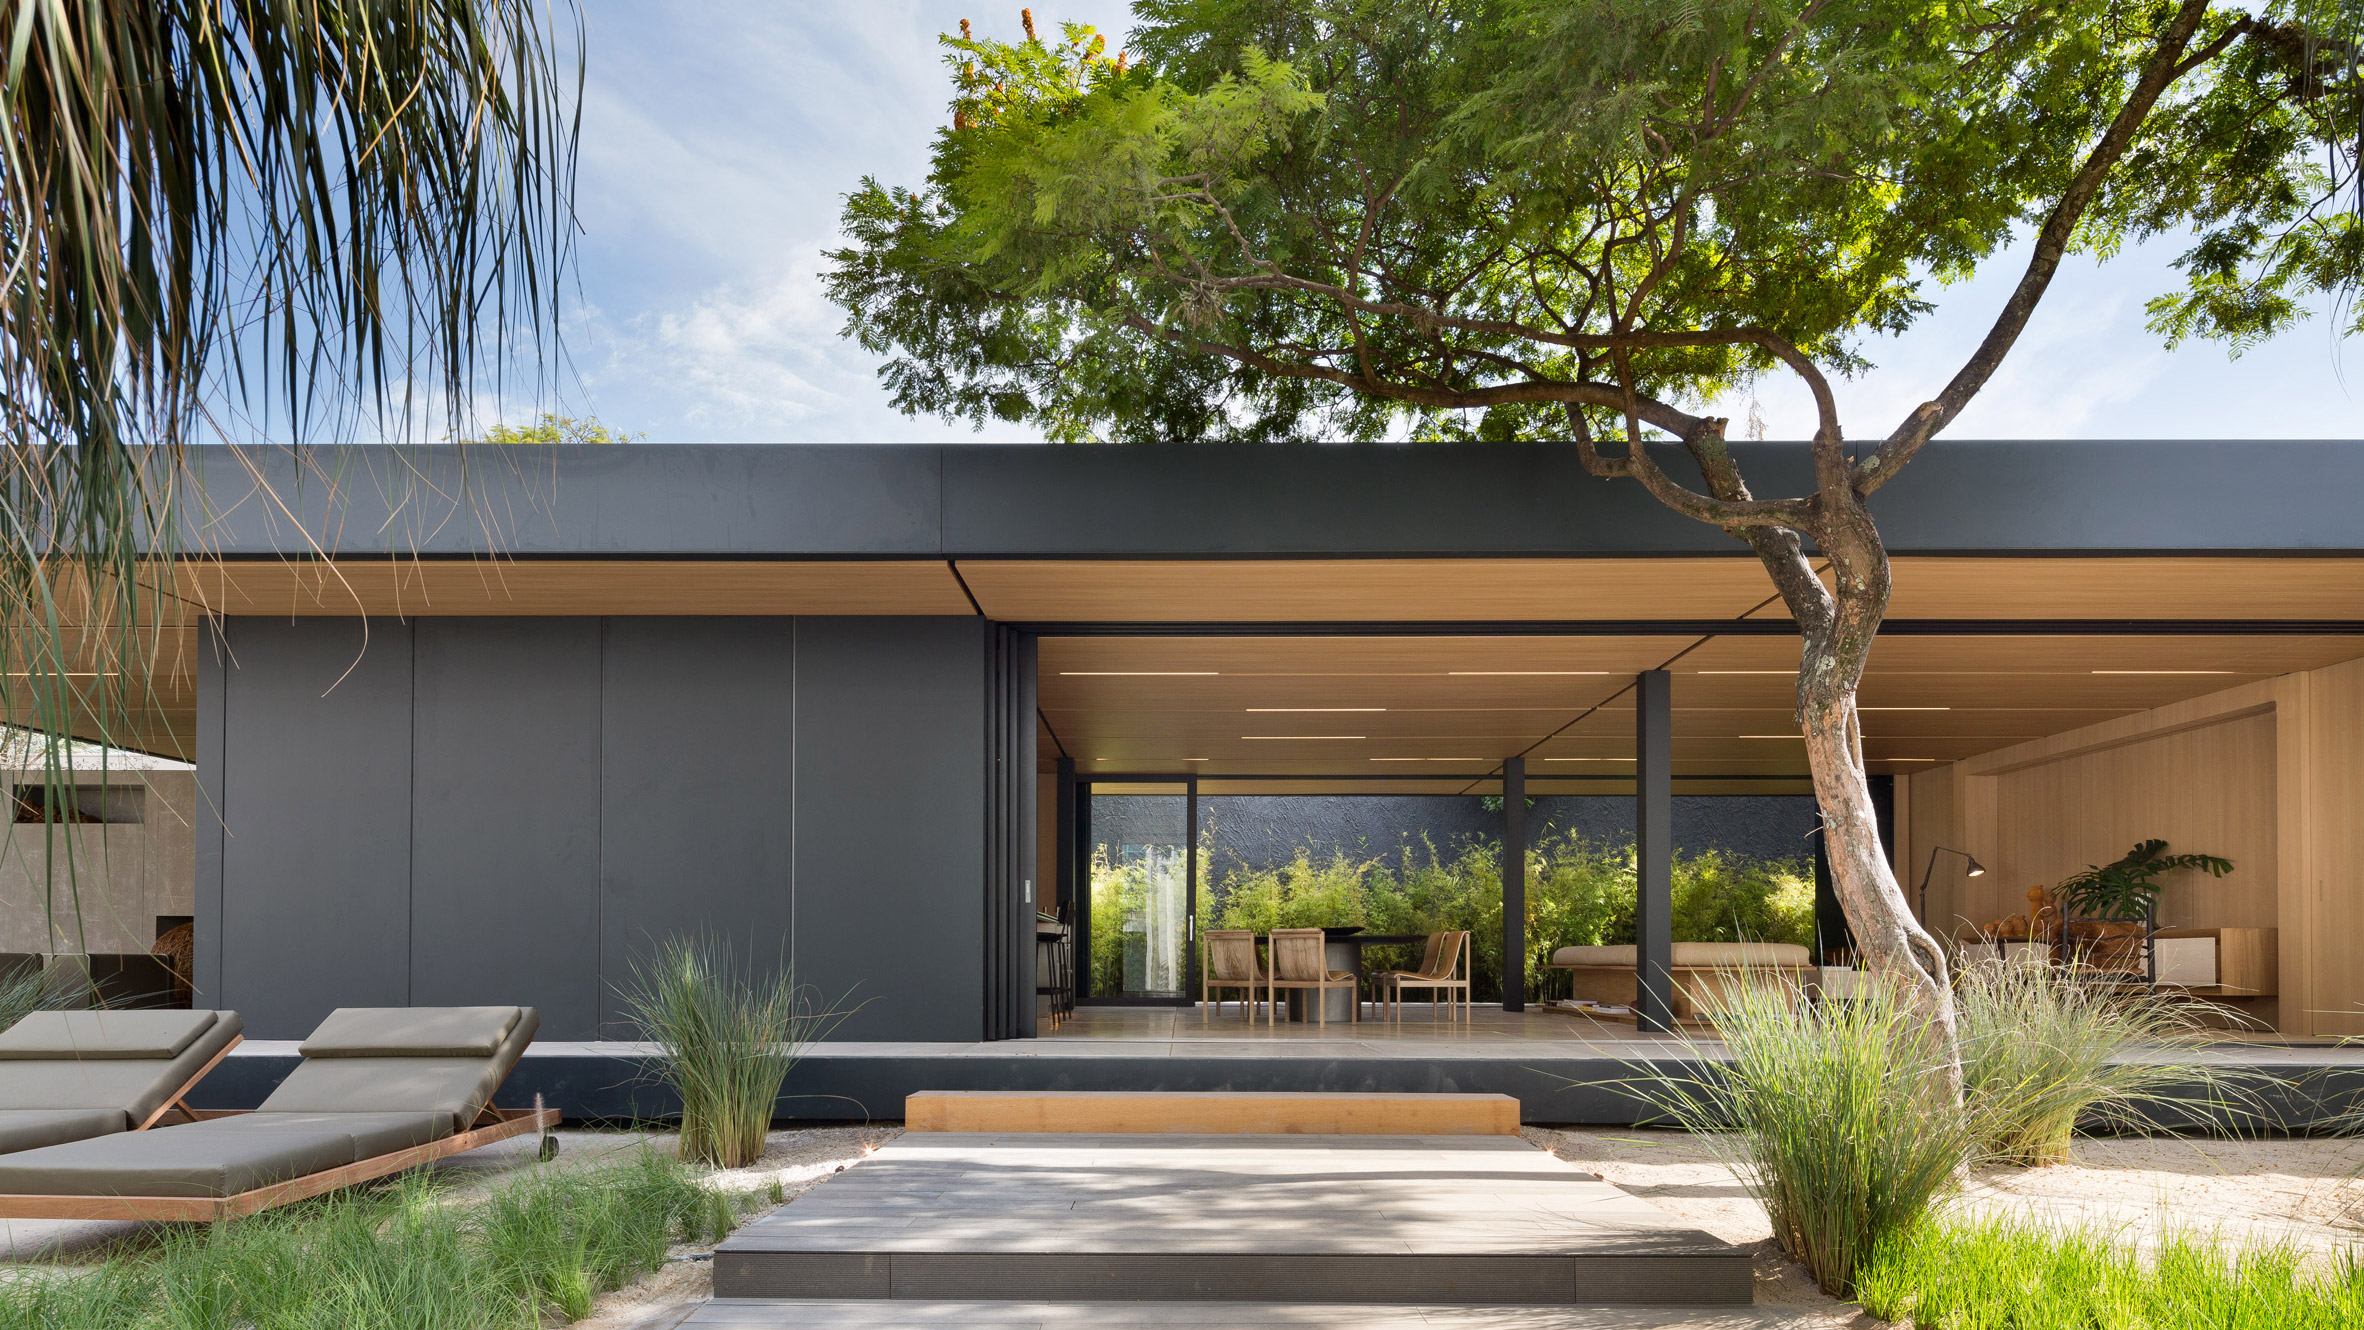 Studio Arthur Casas designs prefabricated home for SysHaus